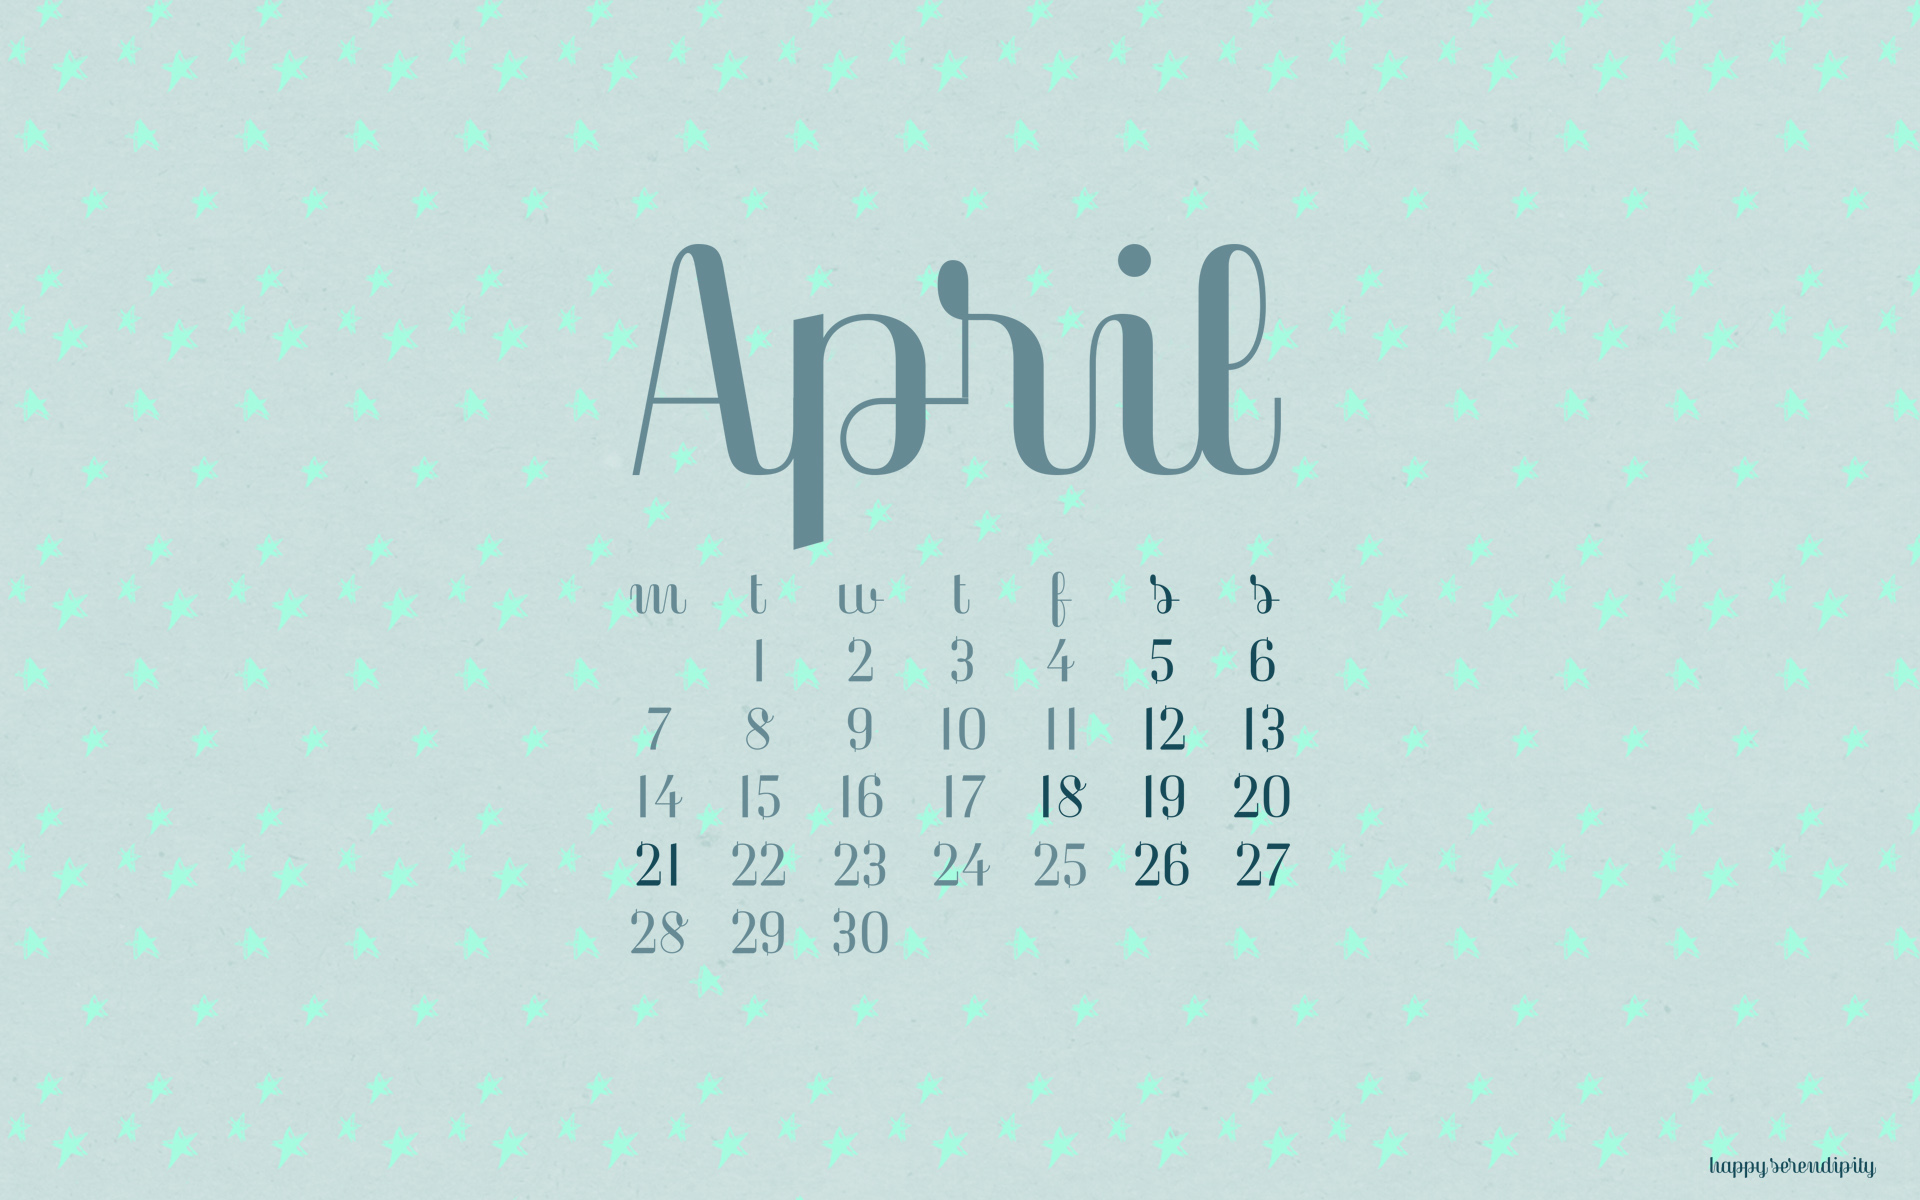 April Wallpaper Calendar